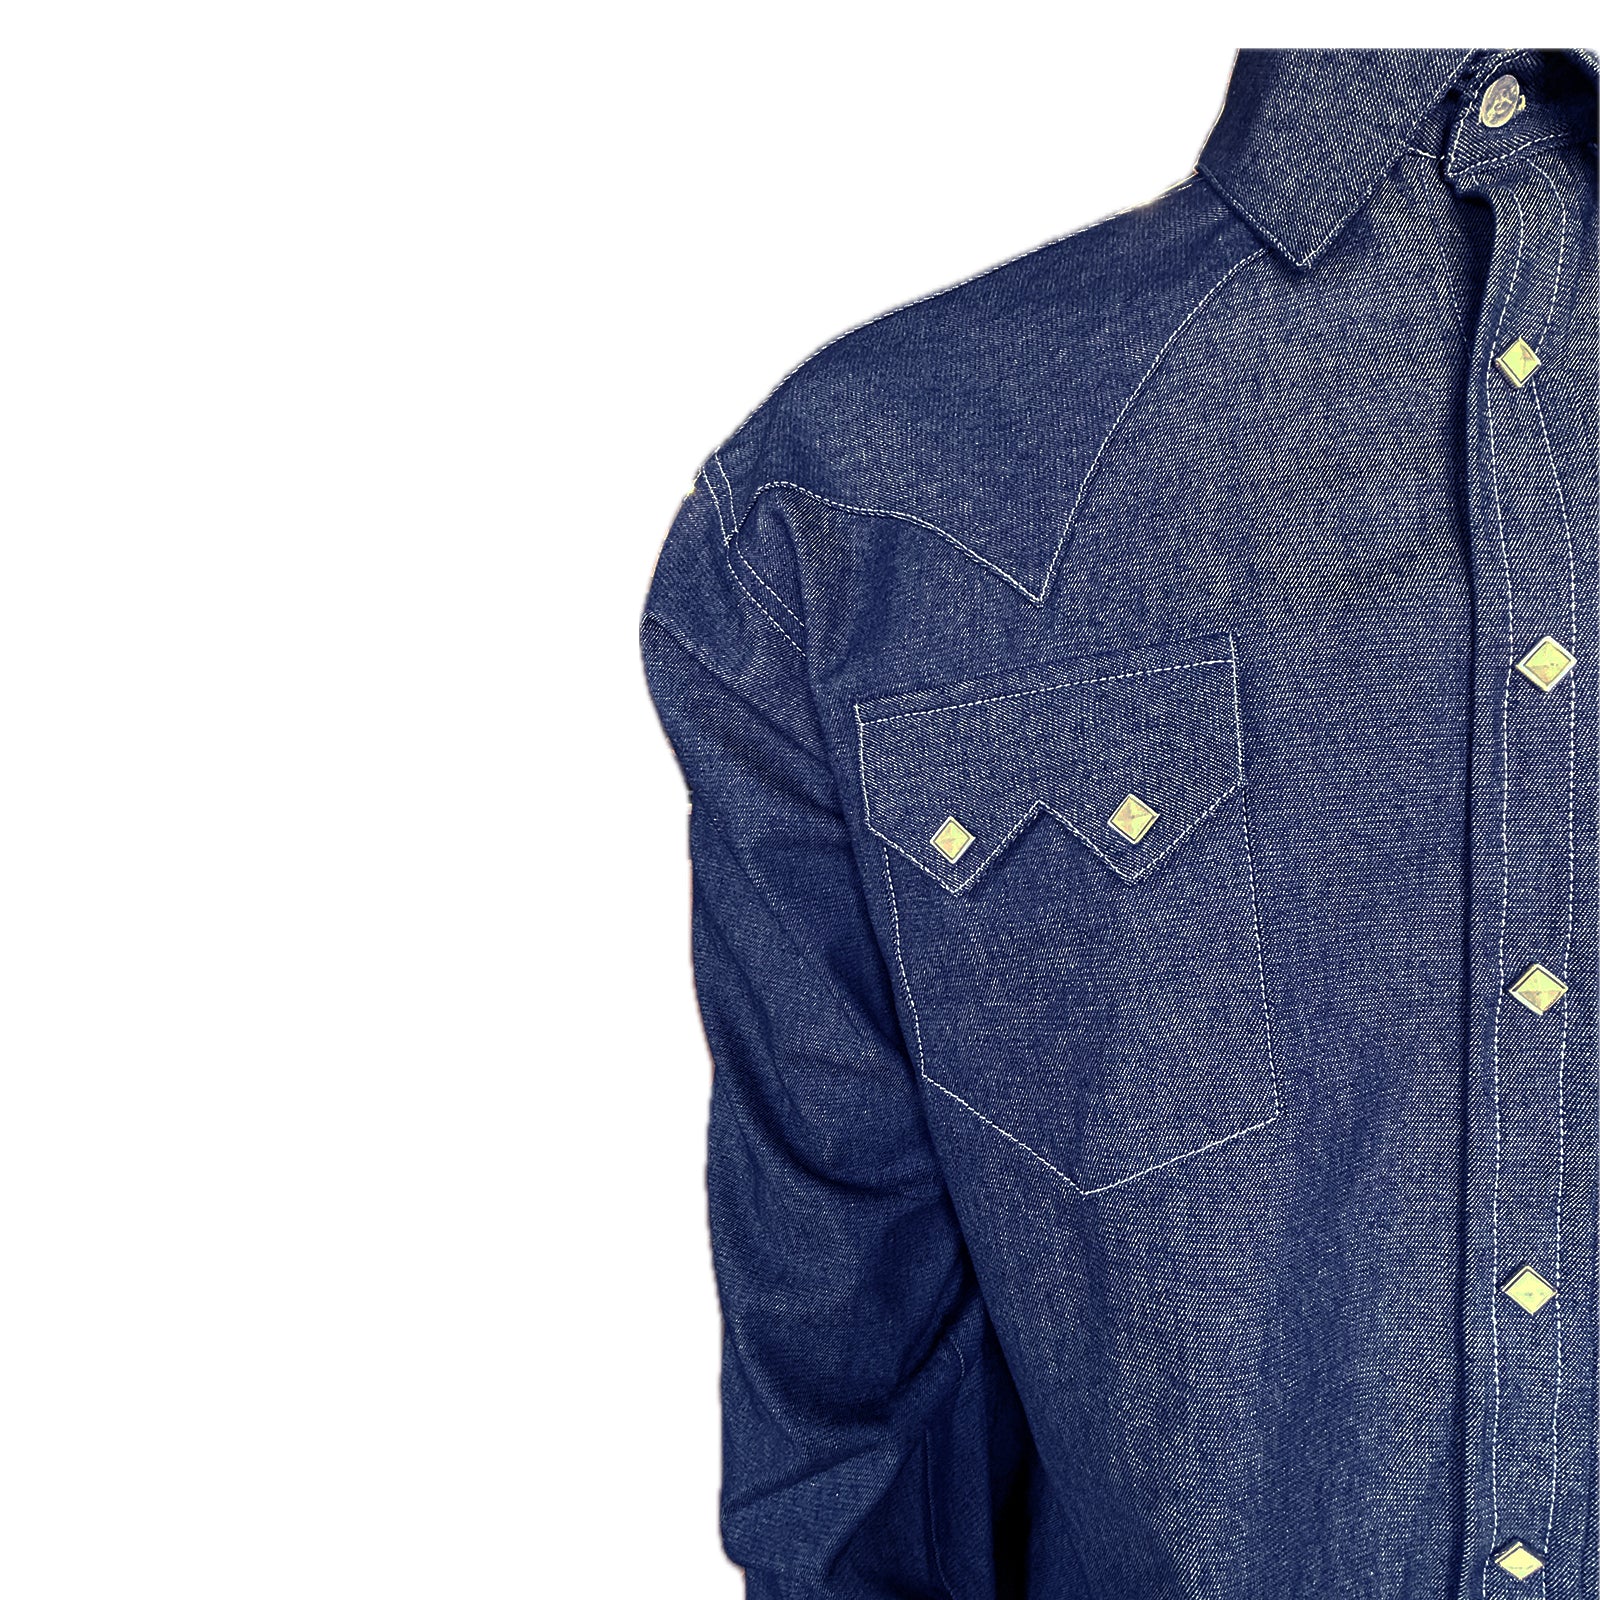 Buy Highlander Blue Slim Fit Solid Casual Shirt for Men Online at Rs.569 -  Ketch